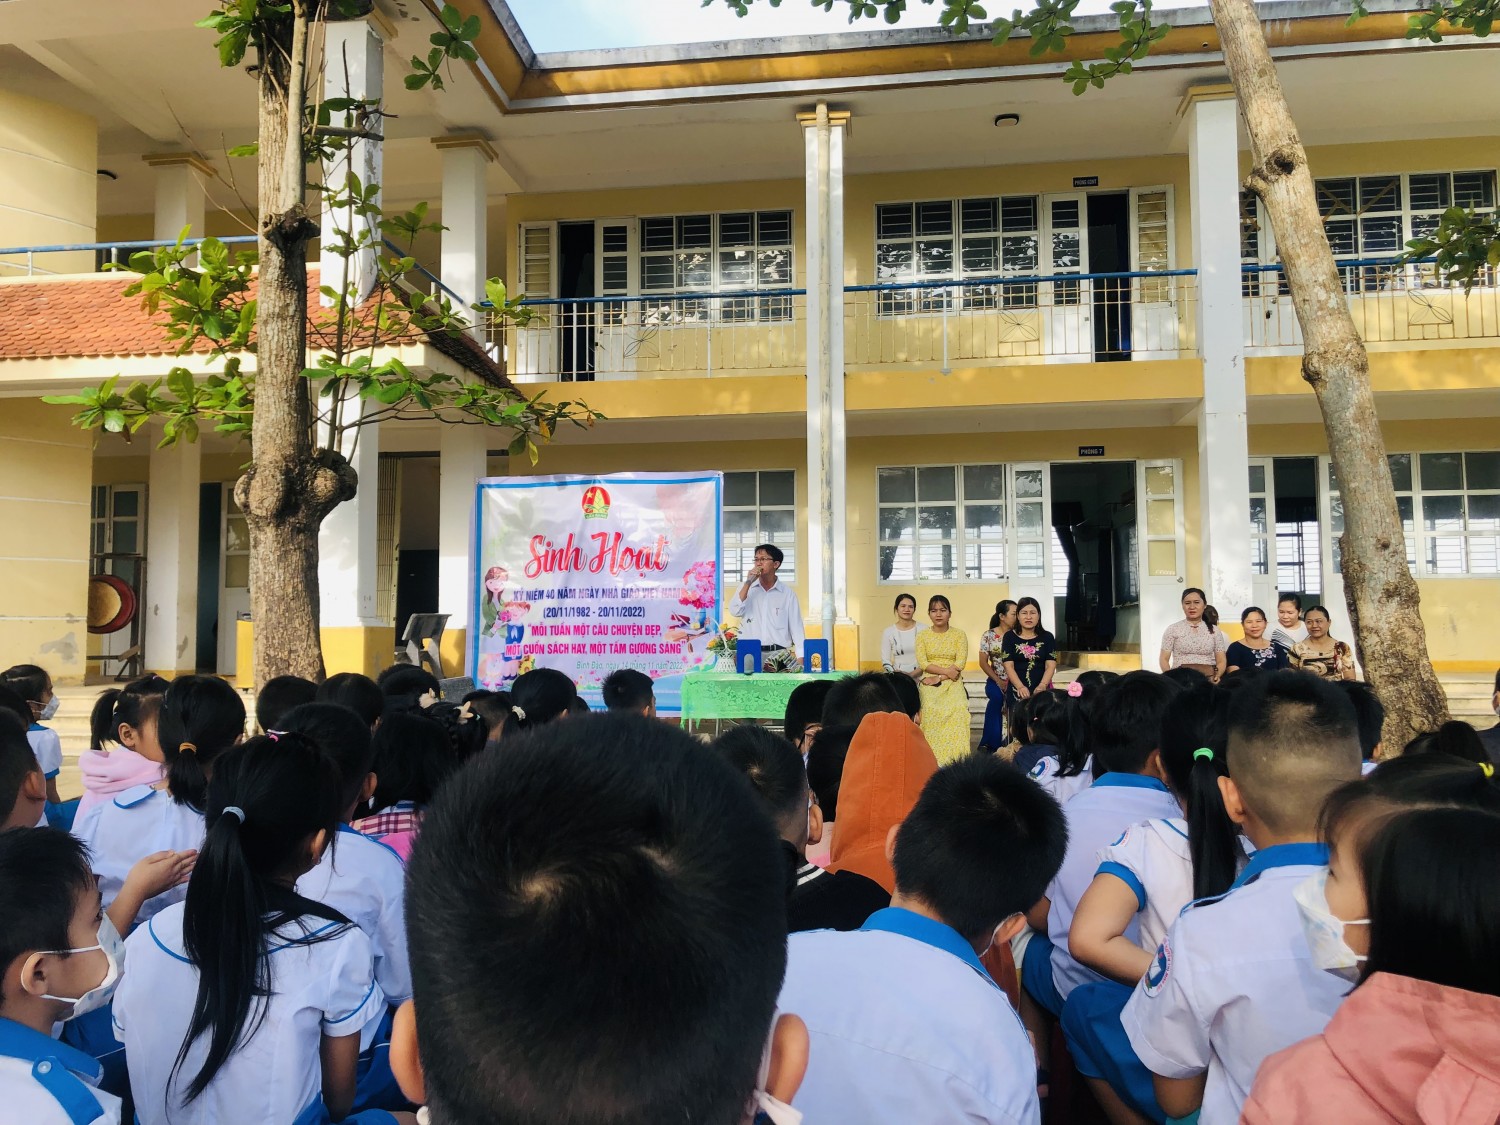 Liên đội Nguyễn Thị Minh Khai tổ chức sinh hoạt chuyên đề "Mỗi tuần một câu chuyện đẹp, một cuốn sách hay, một tấm gương sáng".